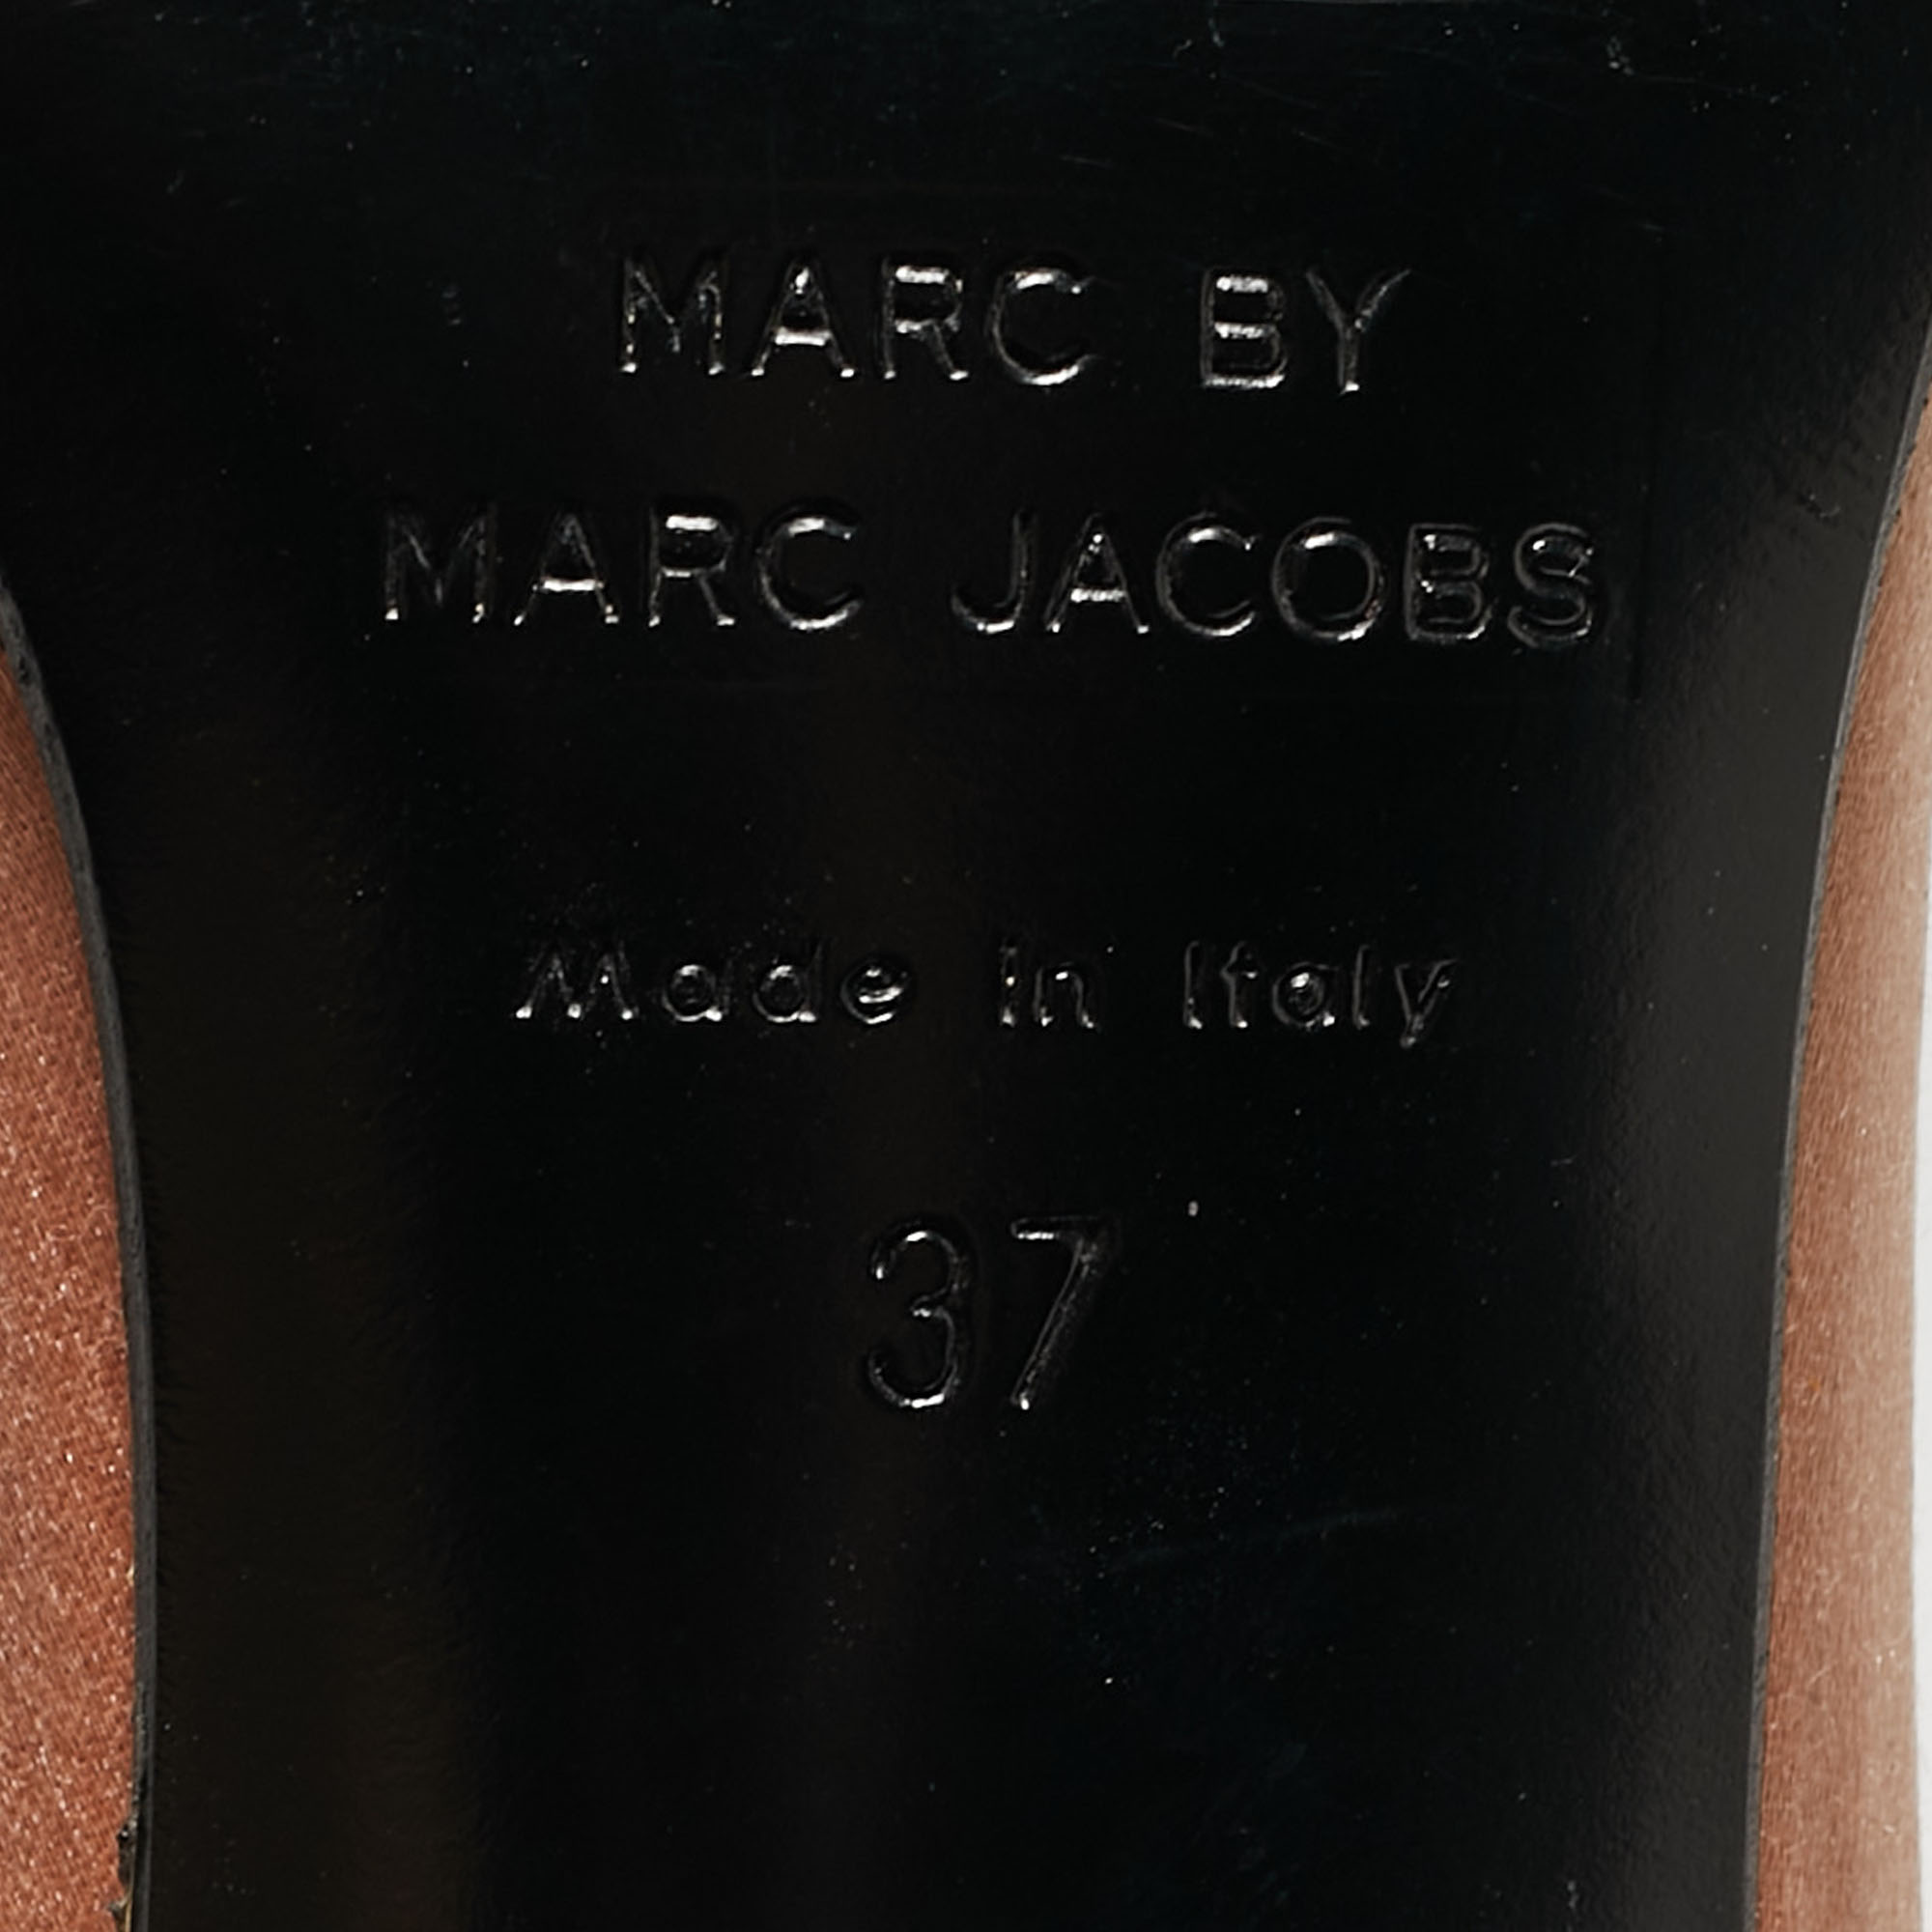 Marc By Marc Jacobs Tricolor Satin Peep Toe Pumps Size 37